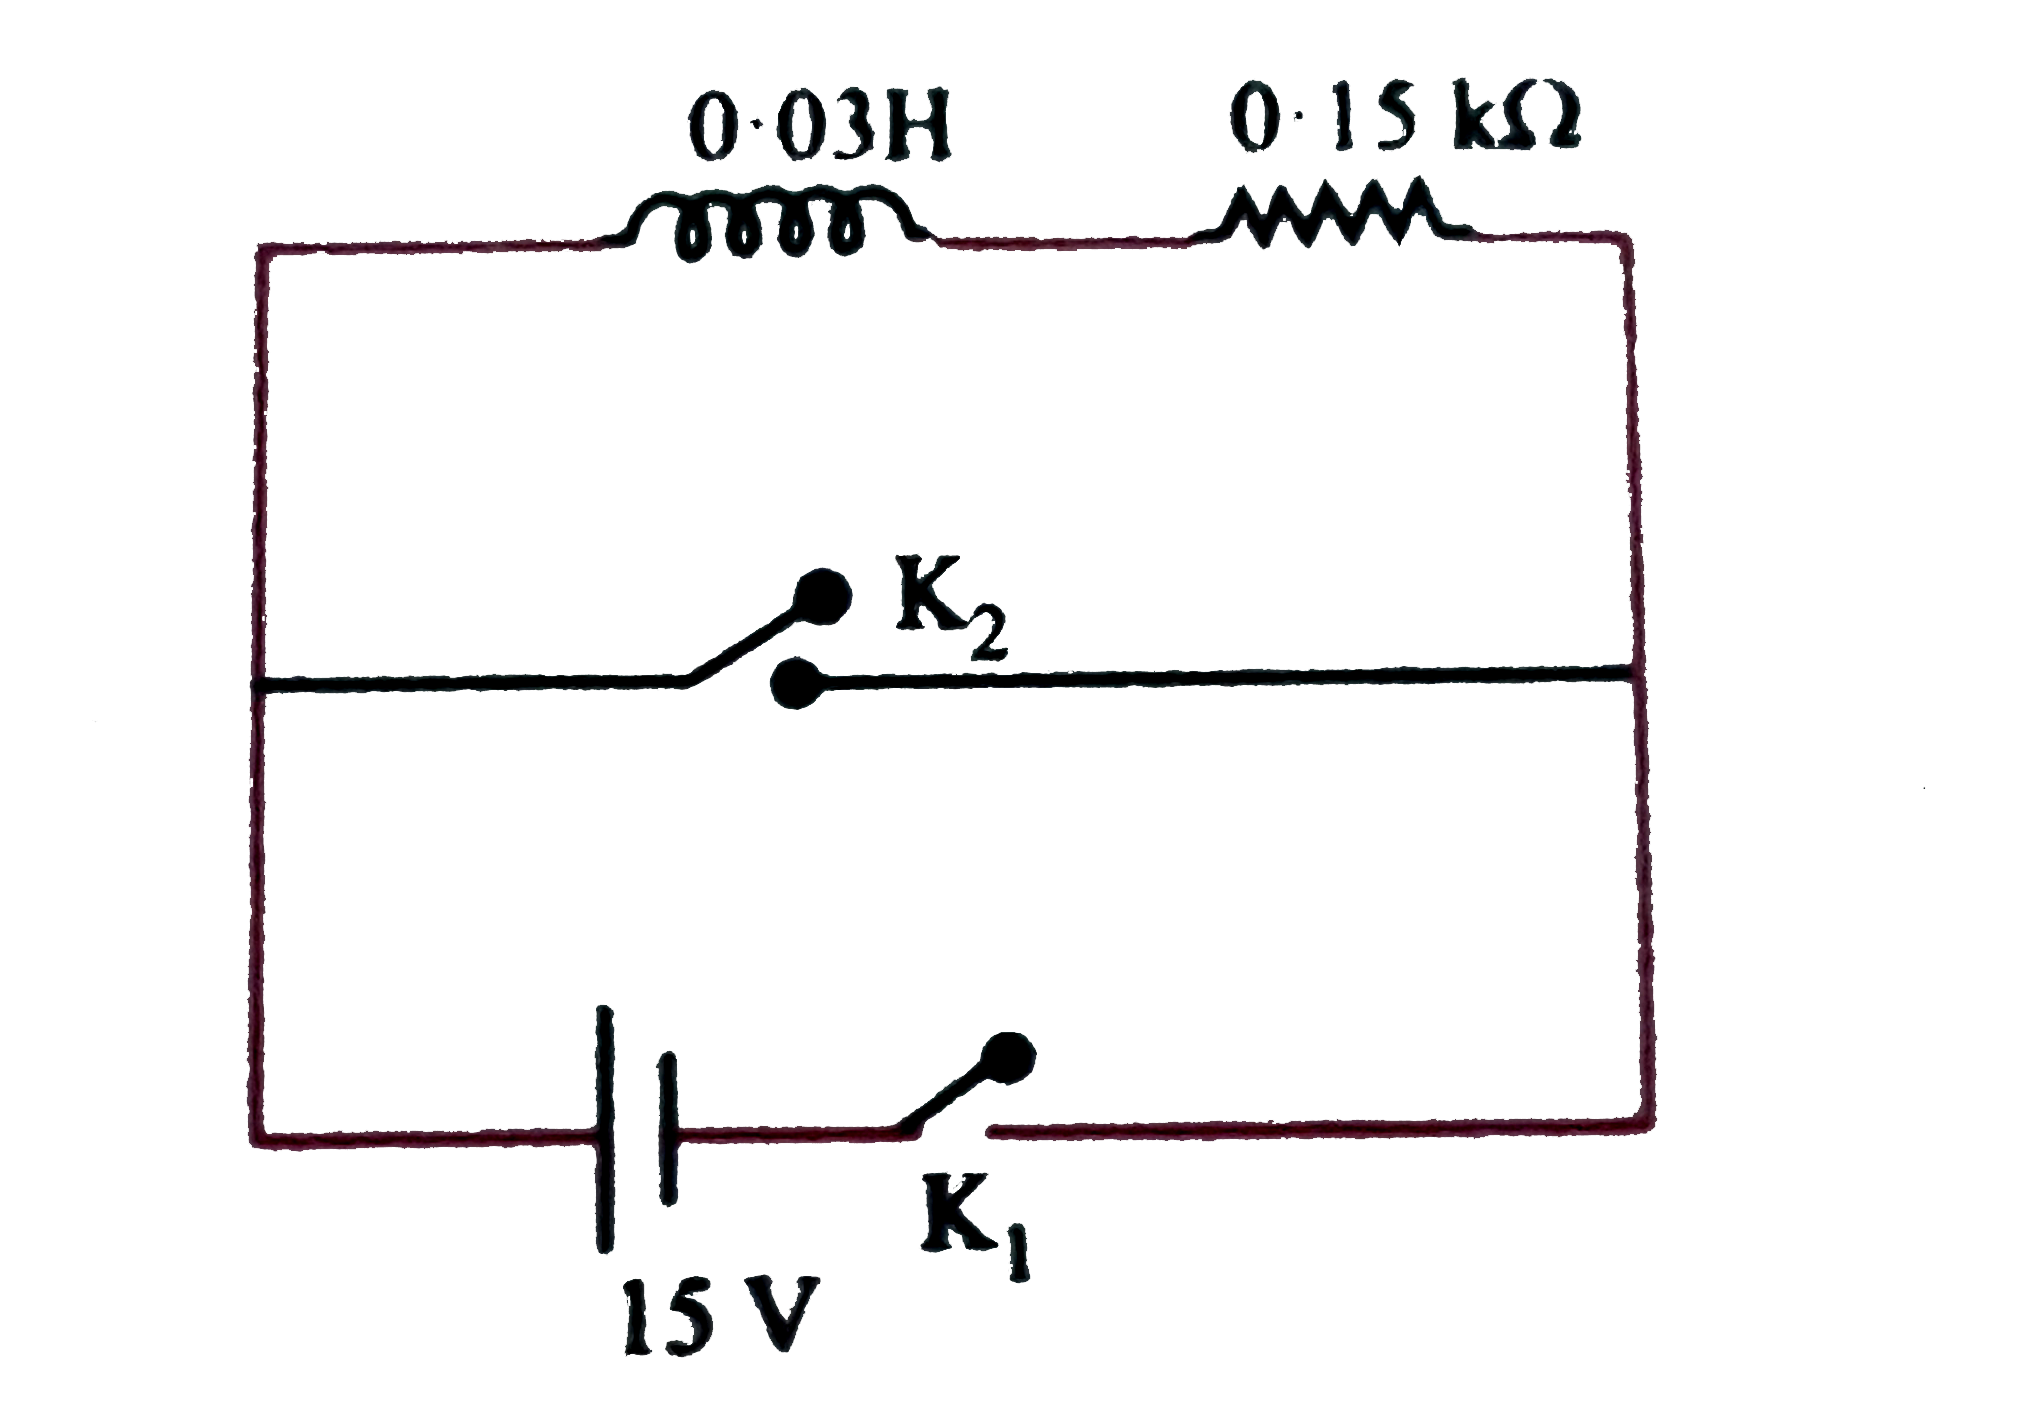 निम्न चित्र के अनुसार (L=0.03 H) प्रेरकत्व तथा प्रतिरोध (R=0.15k Omega) श्रेणी में 15 V वि. वा. बल की बैटरी से जुड़े है। कुंजी K(1) को लंबे समय तक बंद अवस्था में रखते है तथा t =0 पर K(1) को खुला करके K(2) को बंद कर देते है। t =1 ms पर परिपथ में प्रवाहित धारा (e^(s)~=150)